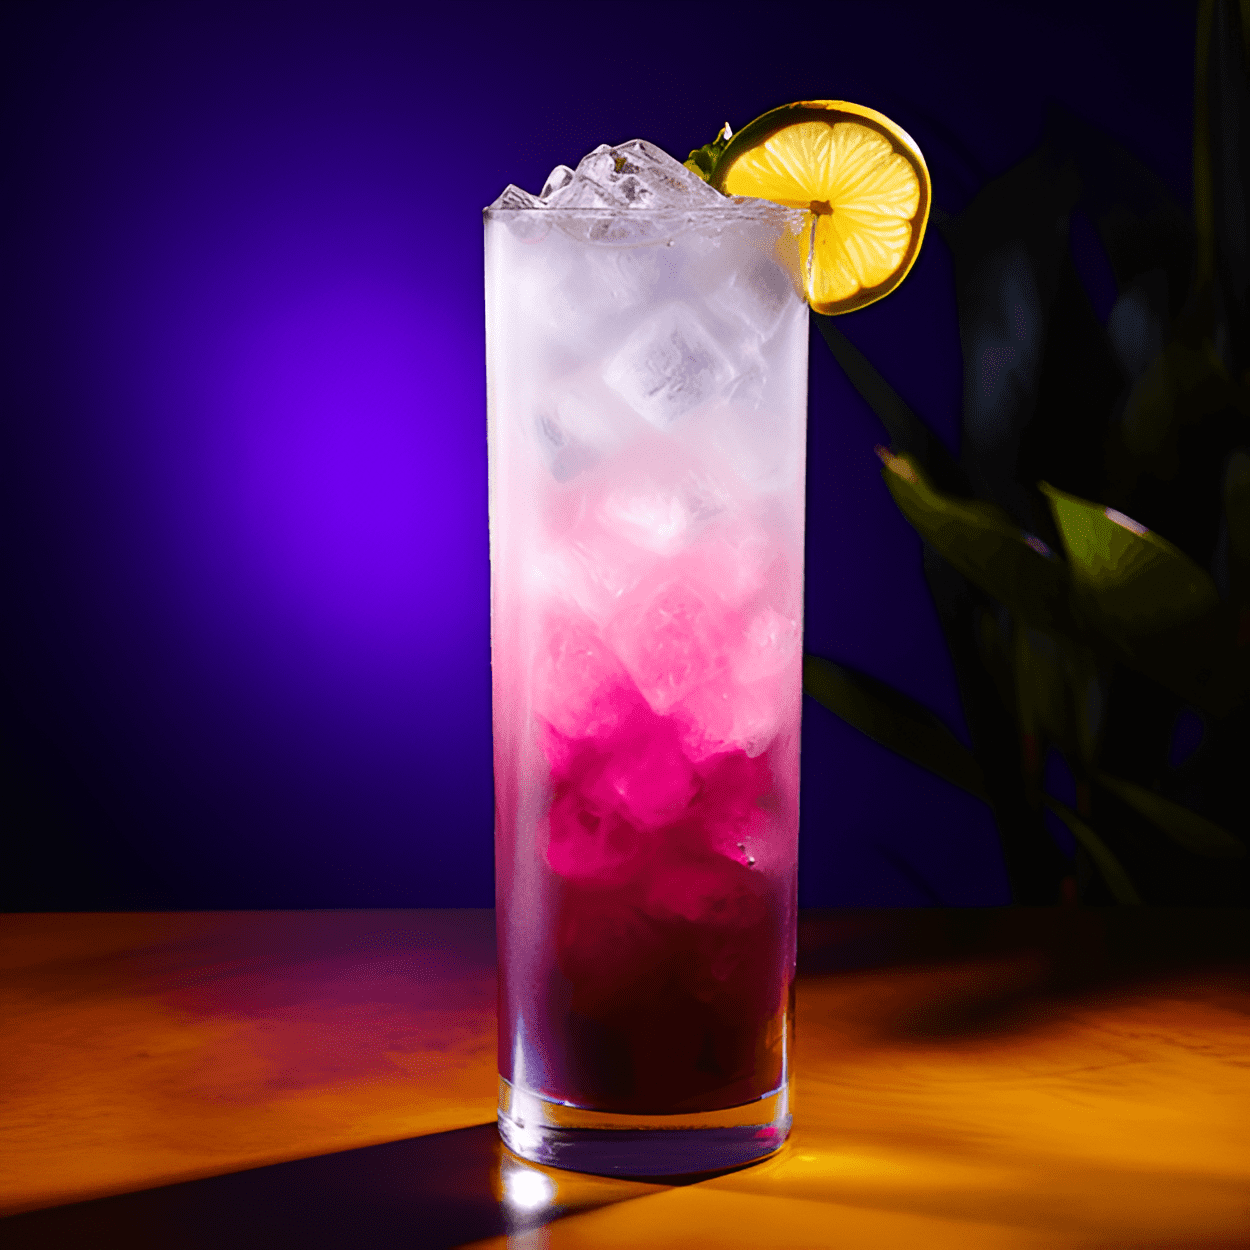 El cóctel Grape Ape es una bebida dulce y frutal con un vibrante color morado. Tiene un sabor refrescante y ácido, con un toque de acidez del refresco de limón-lima. La combinación de vodka de uva, blue curaçao y jugo de arándano crea un sabor único y delicioso.